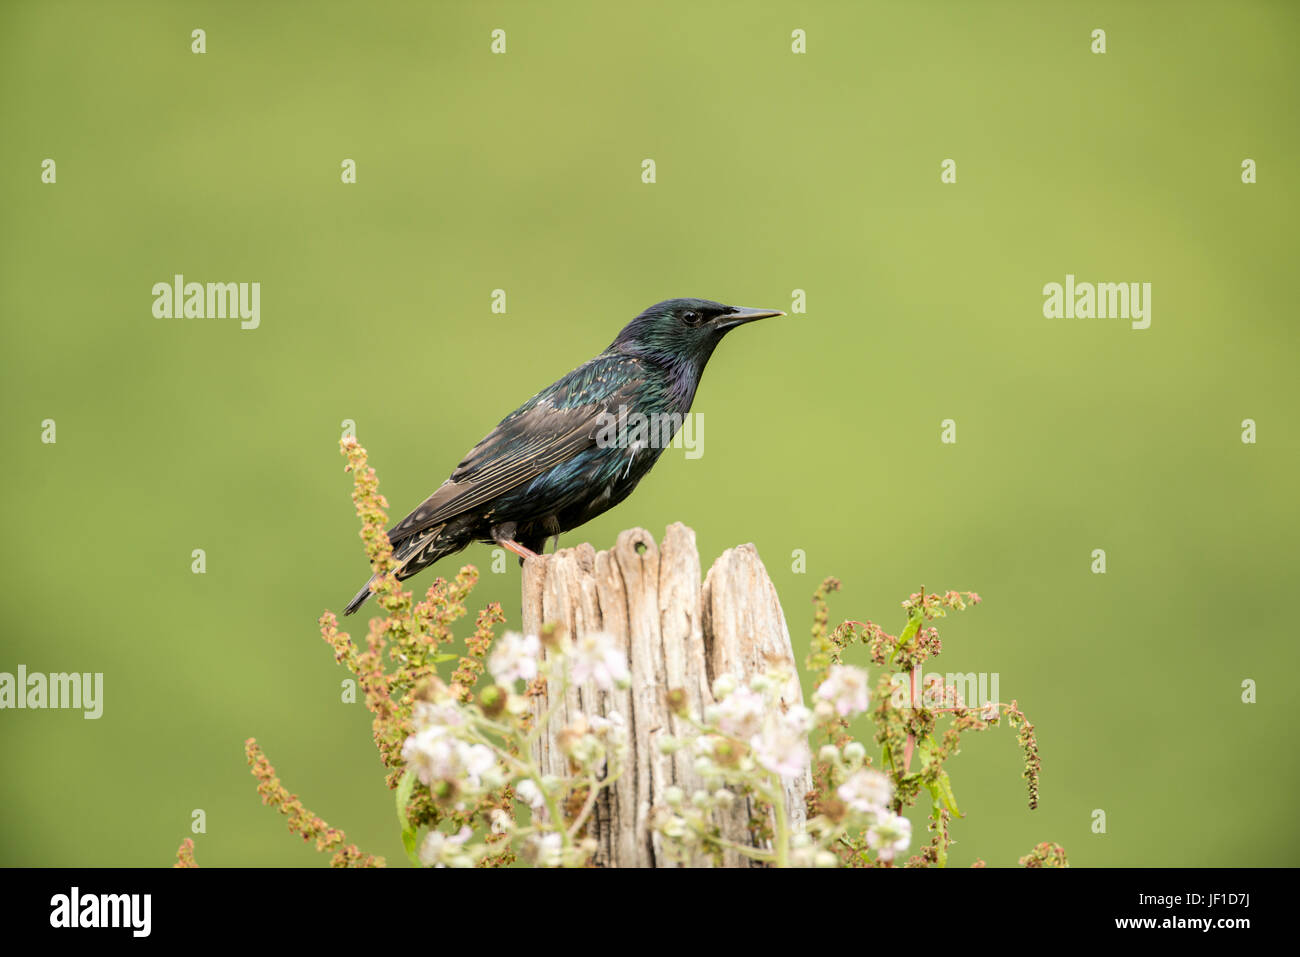 Starling comune (Sturnus vulgaris) fotografato su un vecchio posto di legno, fine stagione di riproduzione Foto Stock